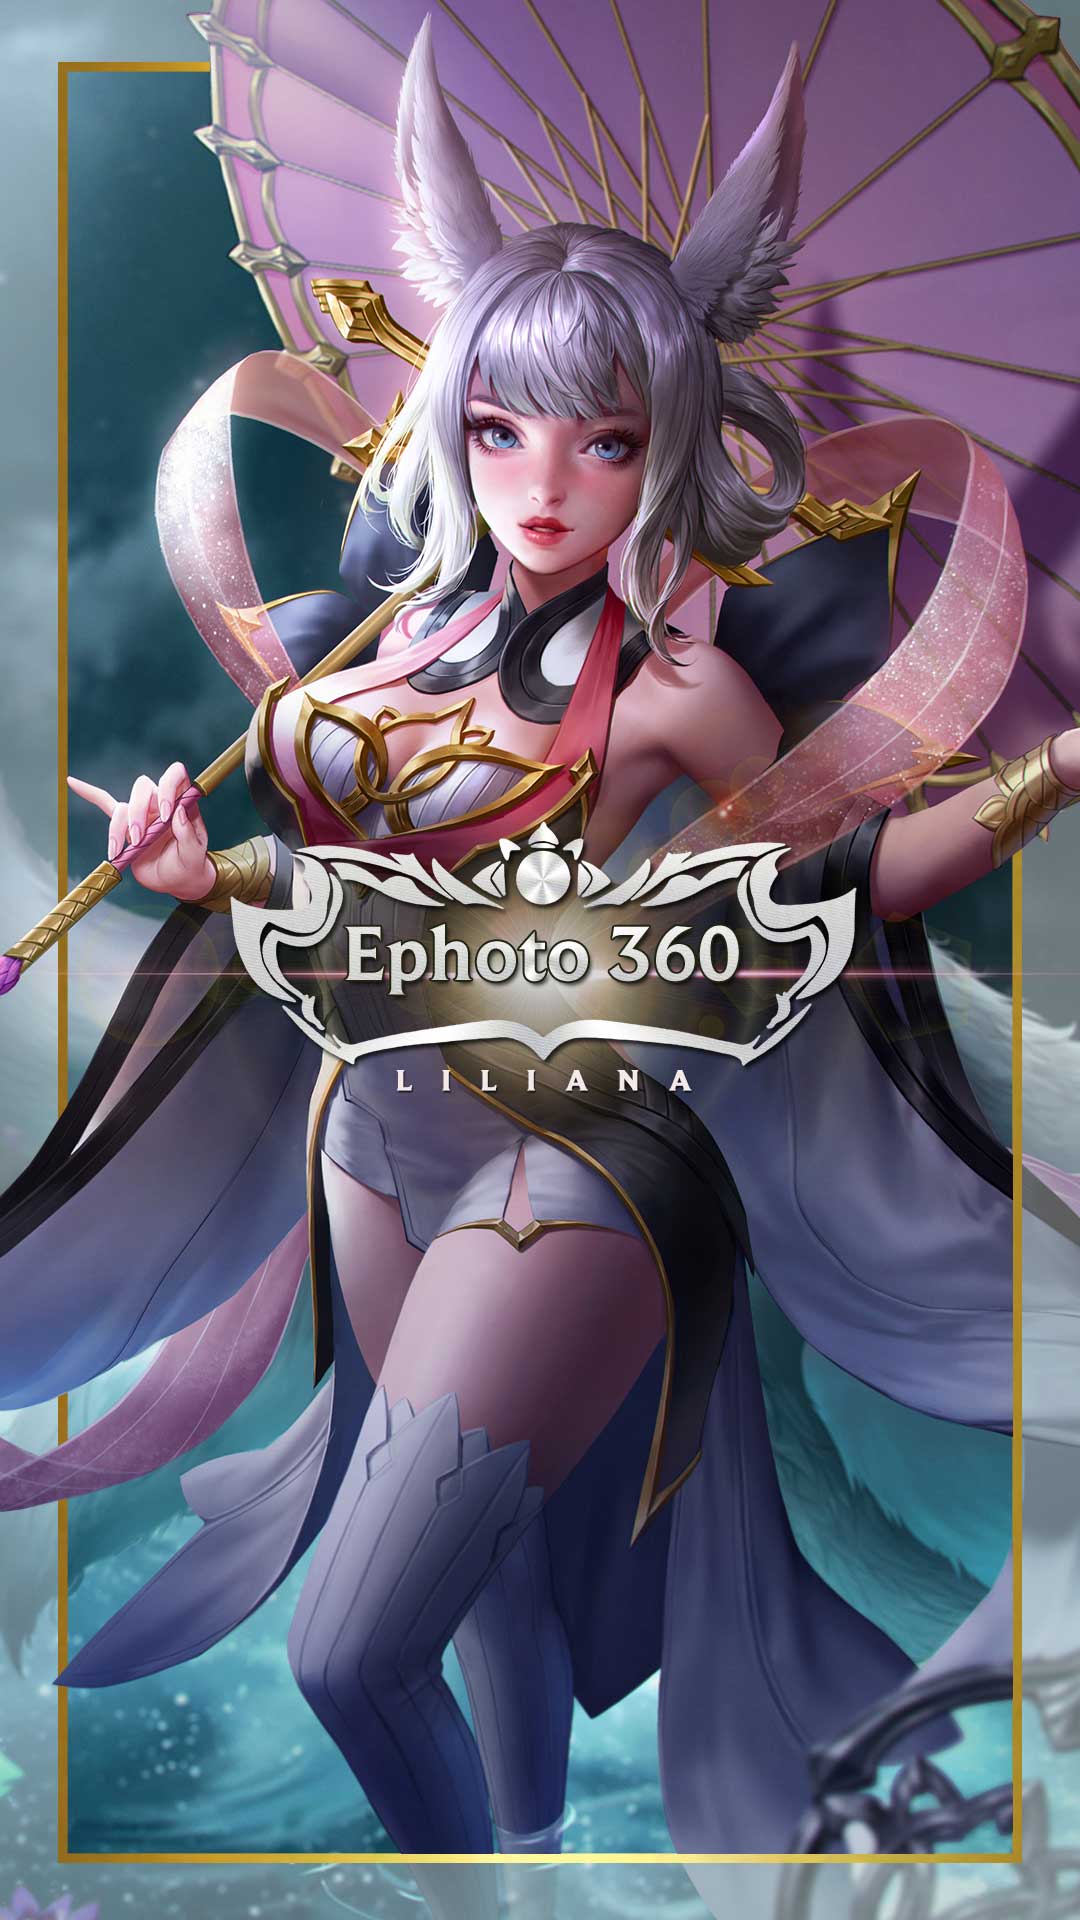 Liên Quân Liliana là một trong những vị tướng được yêu thích nhất trong Liên Quân Mobile. Với sức mạnh và khả năng chiến đấu vượt trội, hình ảnh Liliana sẽ đem lại cho bạn trải nghiệm đầy hứng khởi khi chơi game.